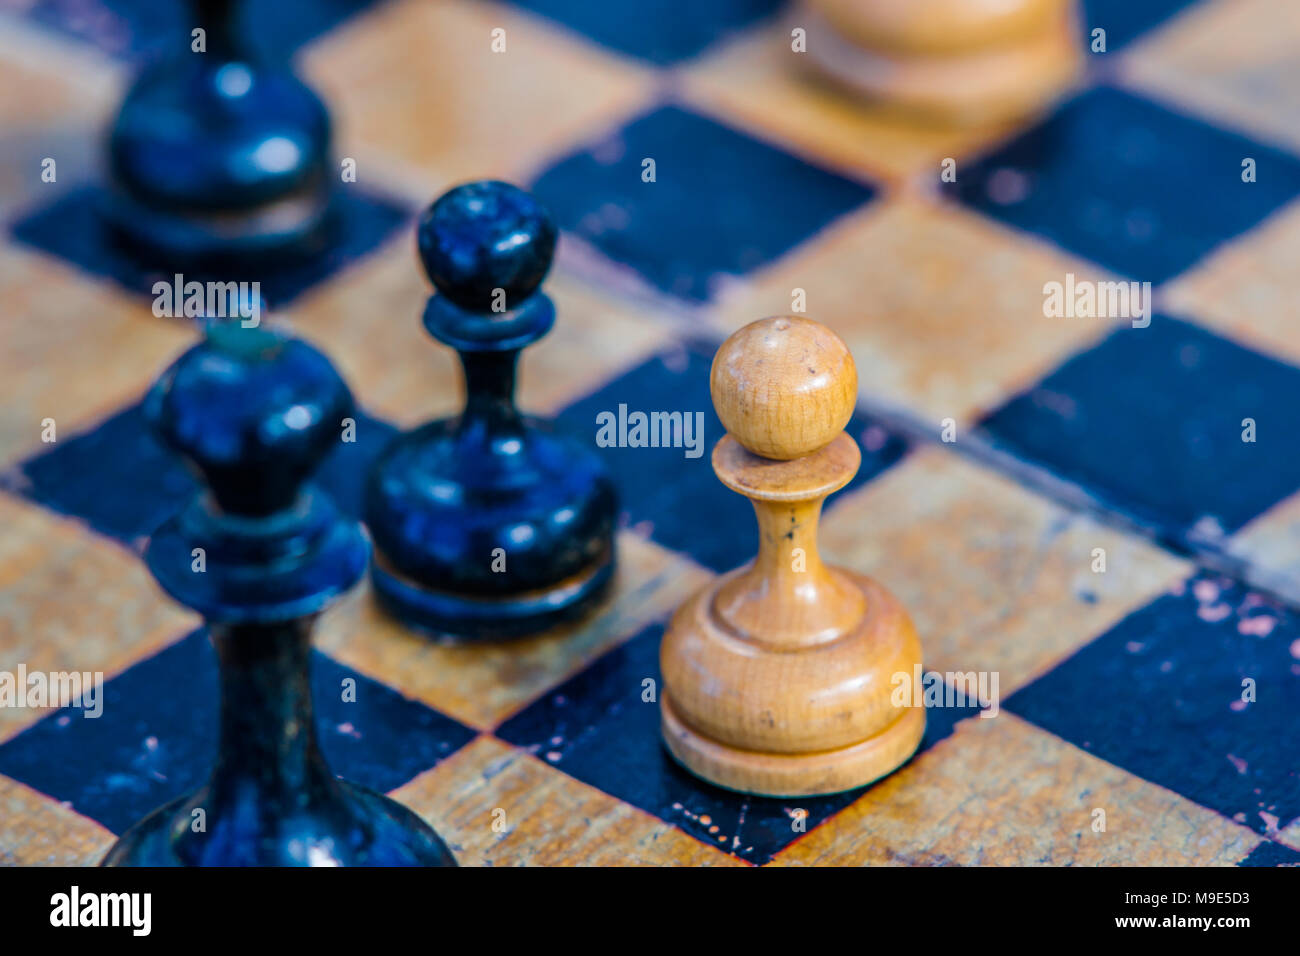 El entorno de color amarillo vibrante enmarca elegantemente el tablero de  ajedrez y sus piezas.